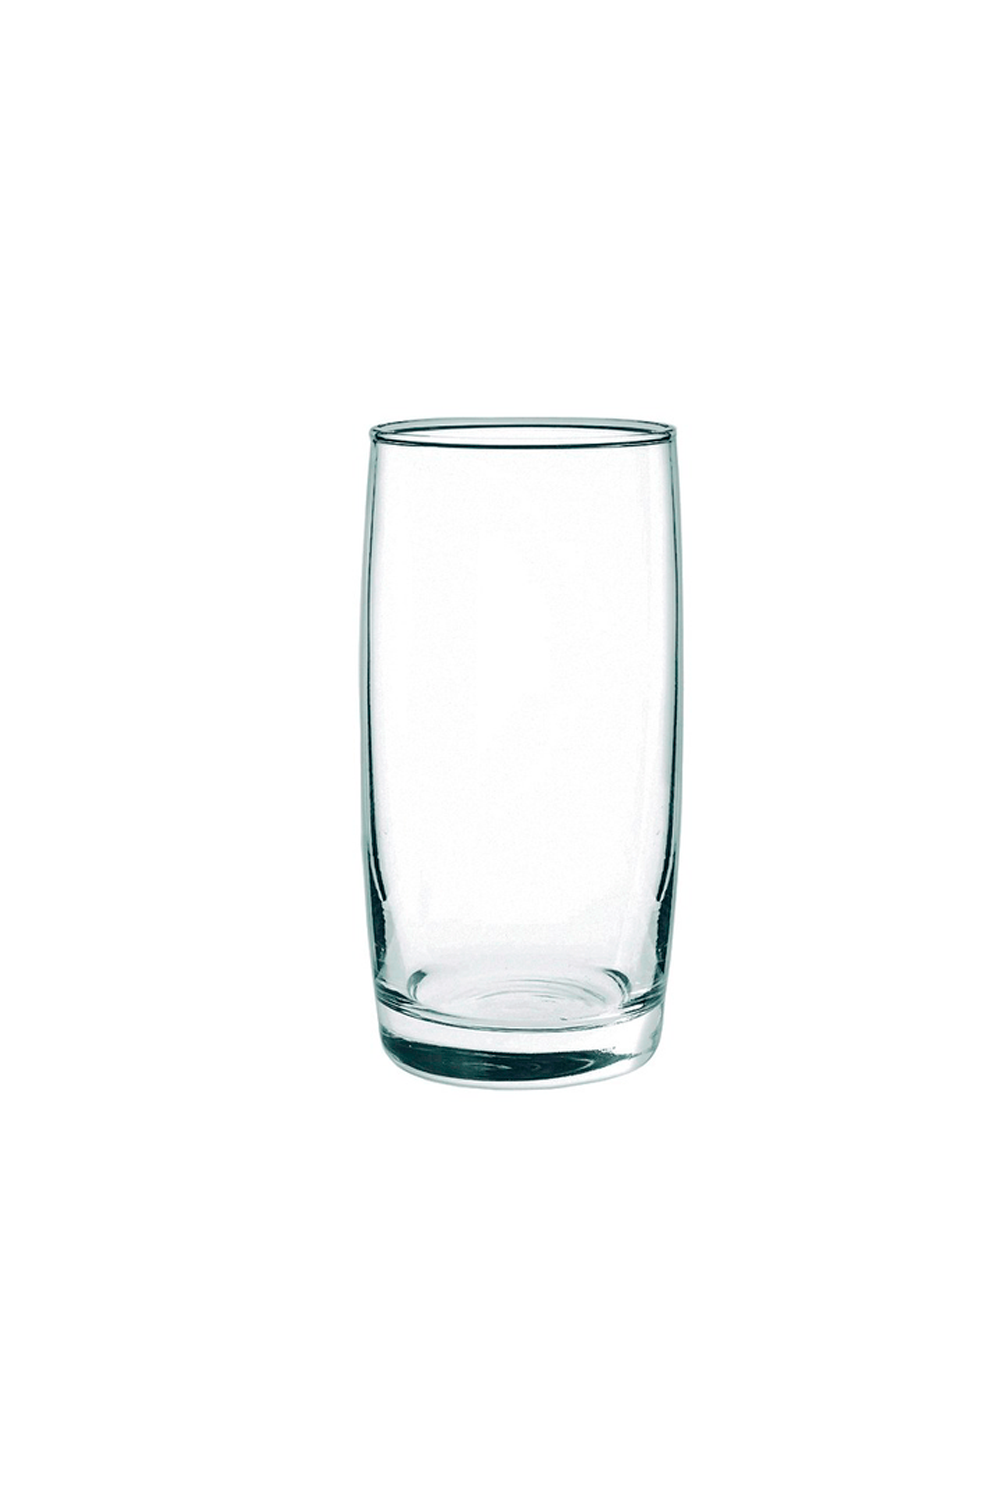 copo-alto-de-vidro-monterey-445ml